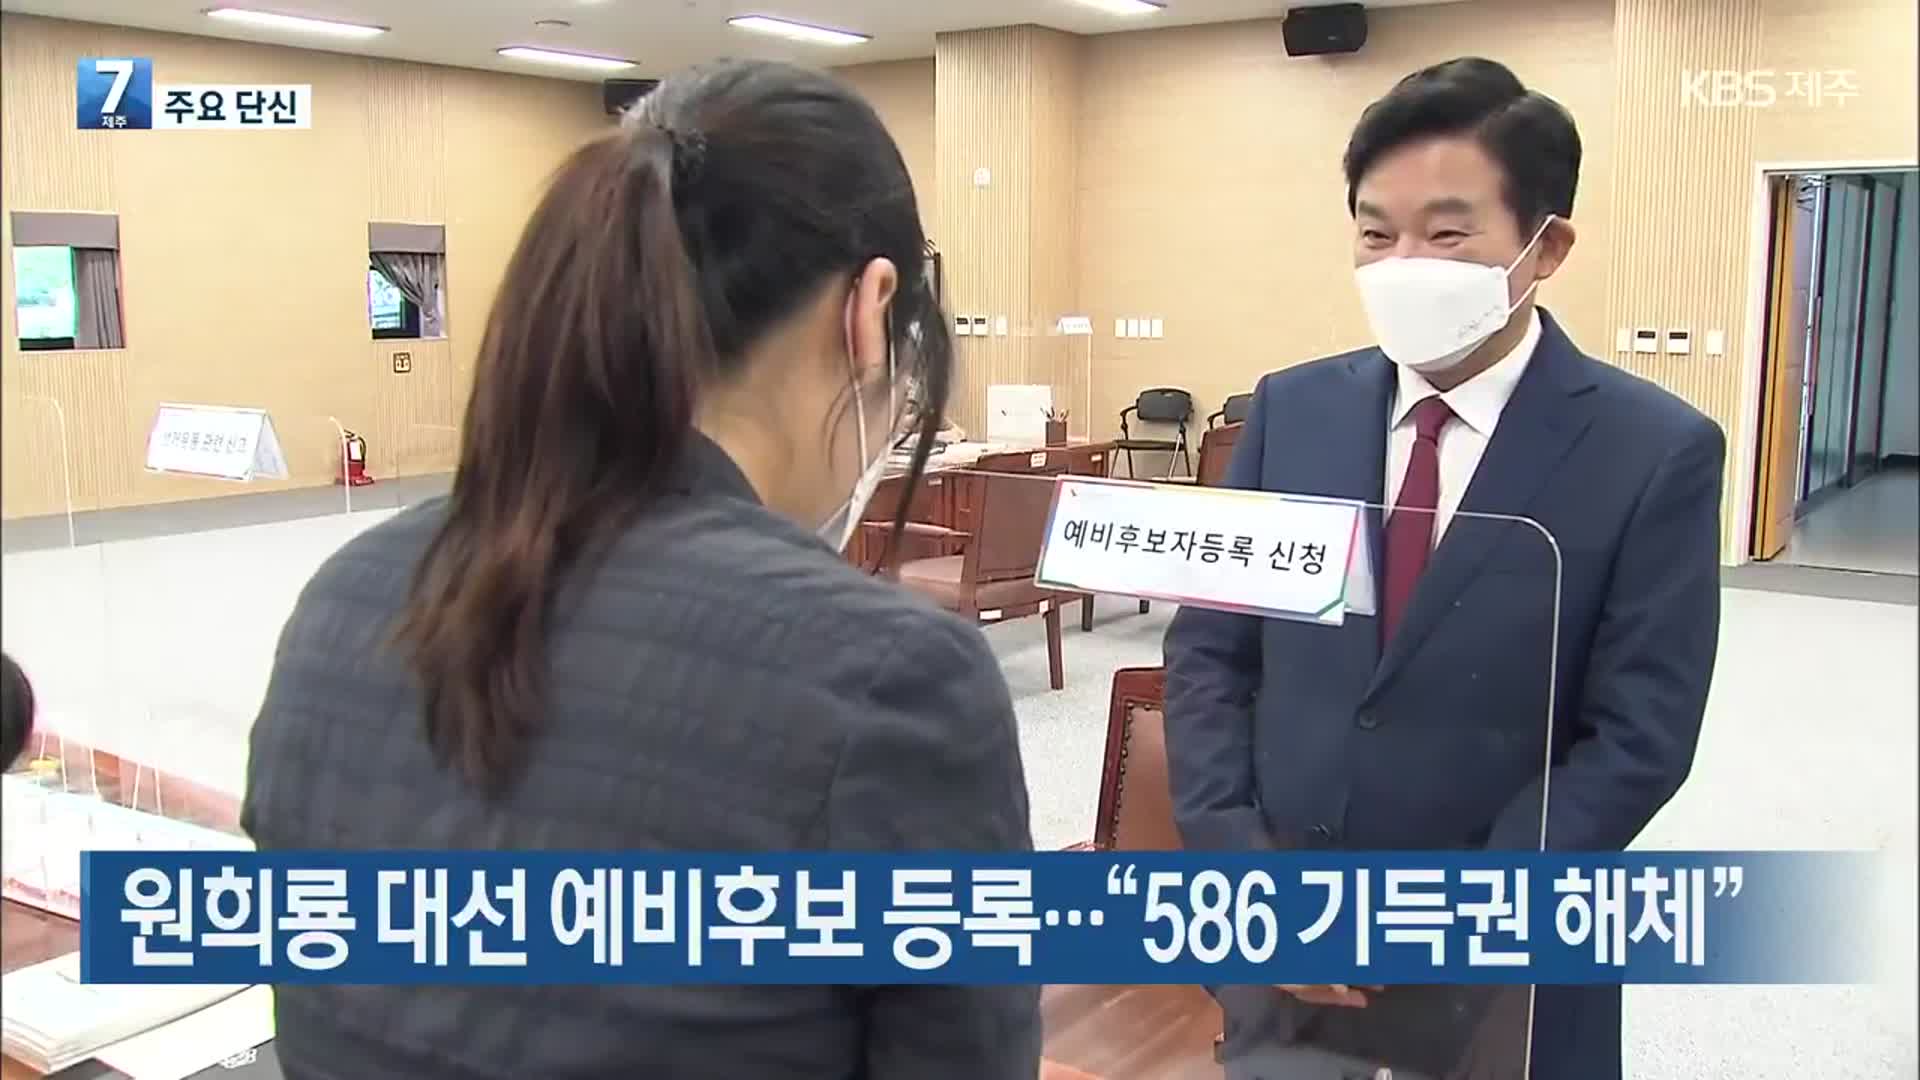 [뉴스브리핑] 원희룡 대선 예비후보 등록…“586 기득권 해체” 외